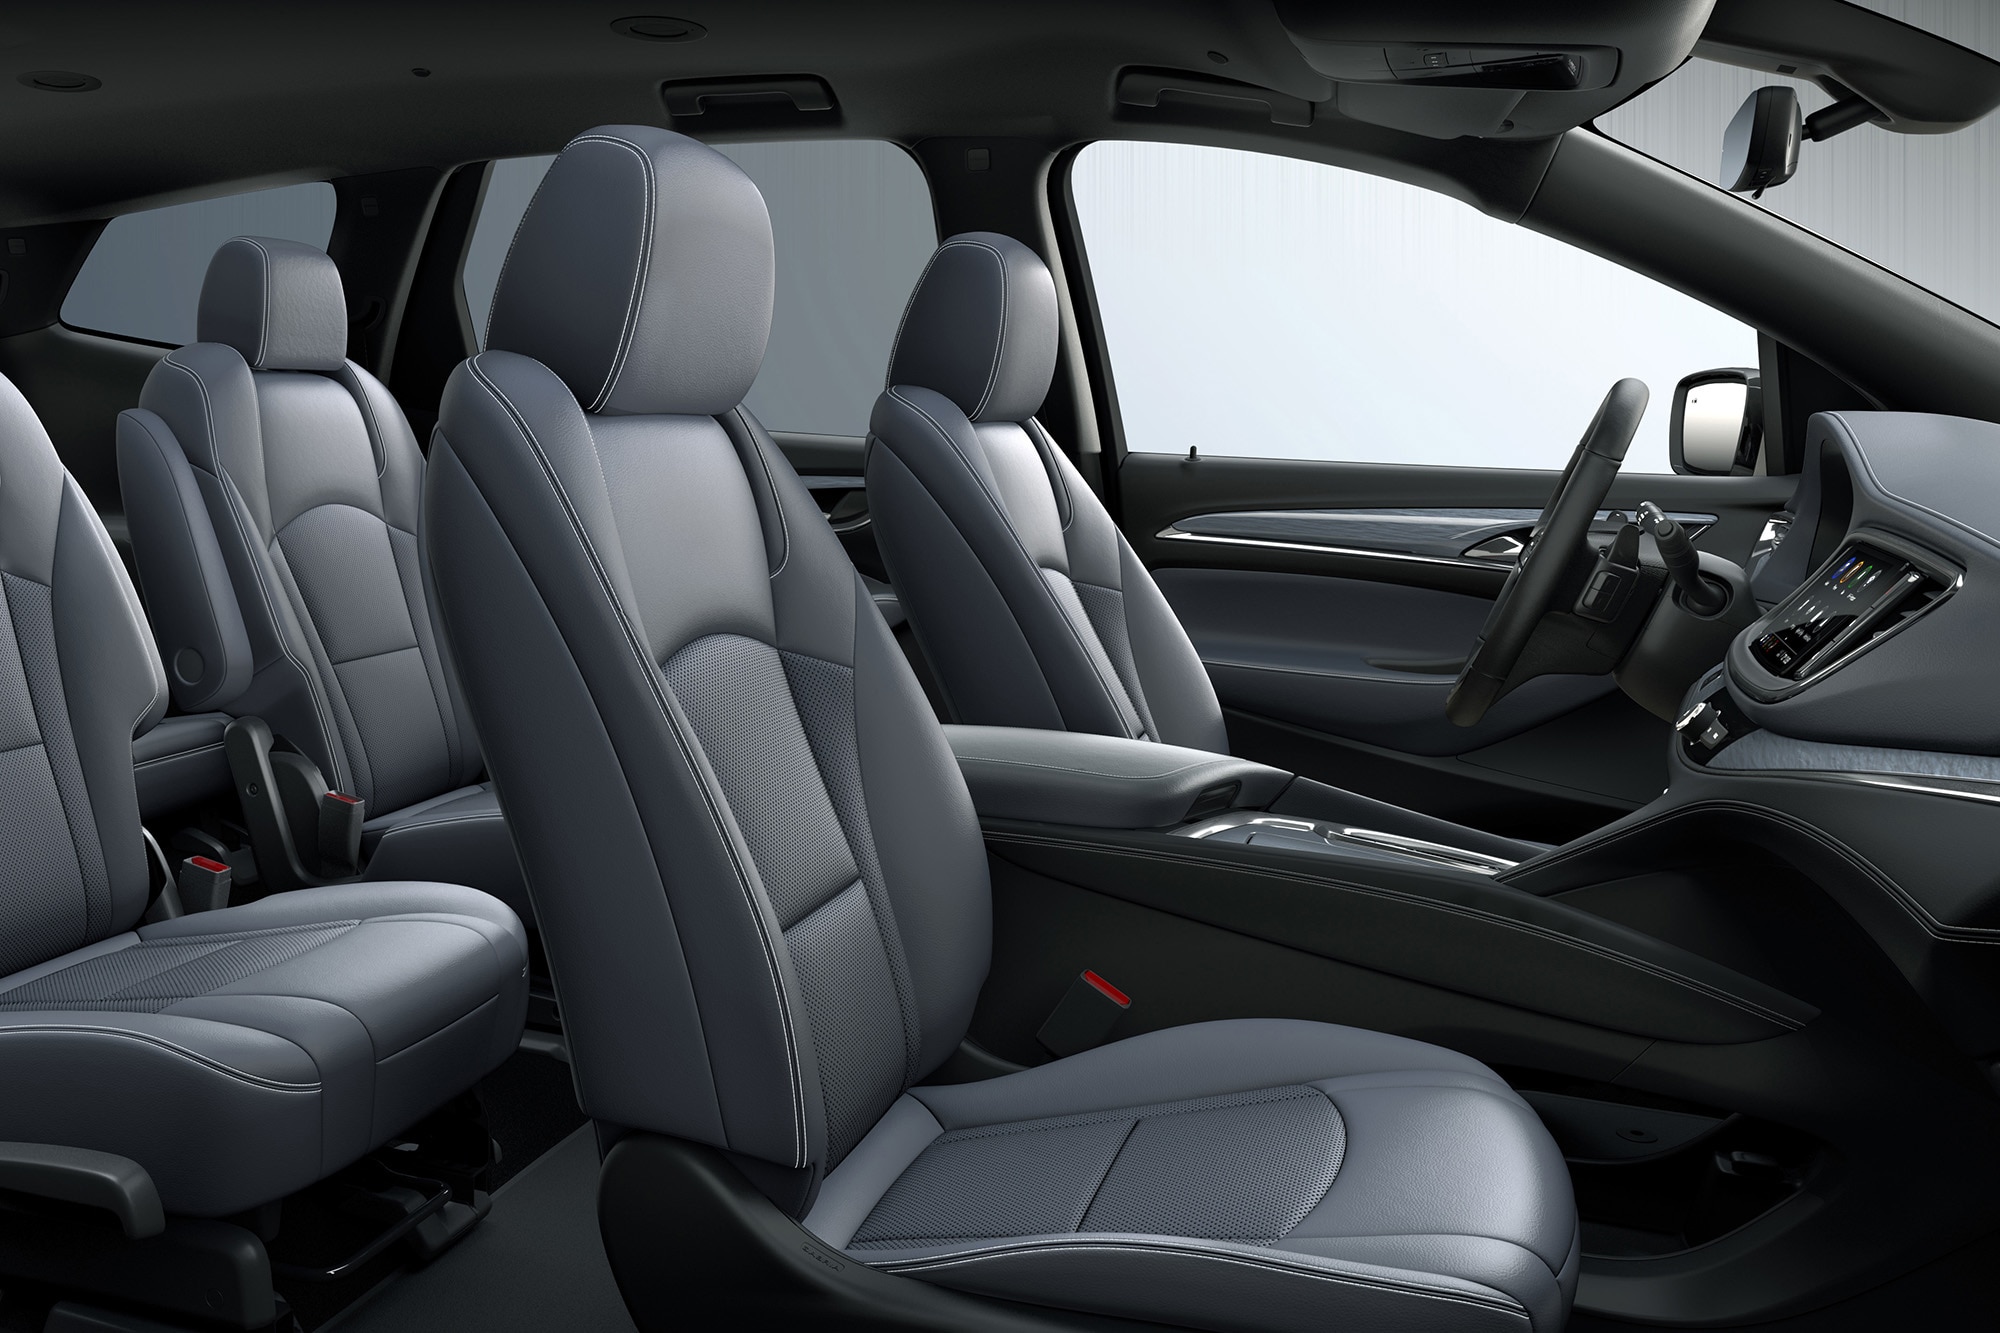 2023 Buick Enclave interior in gray